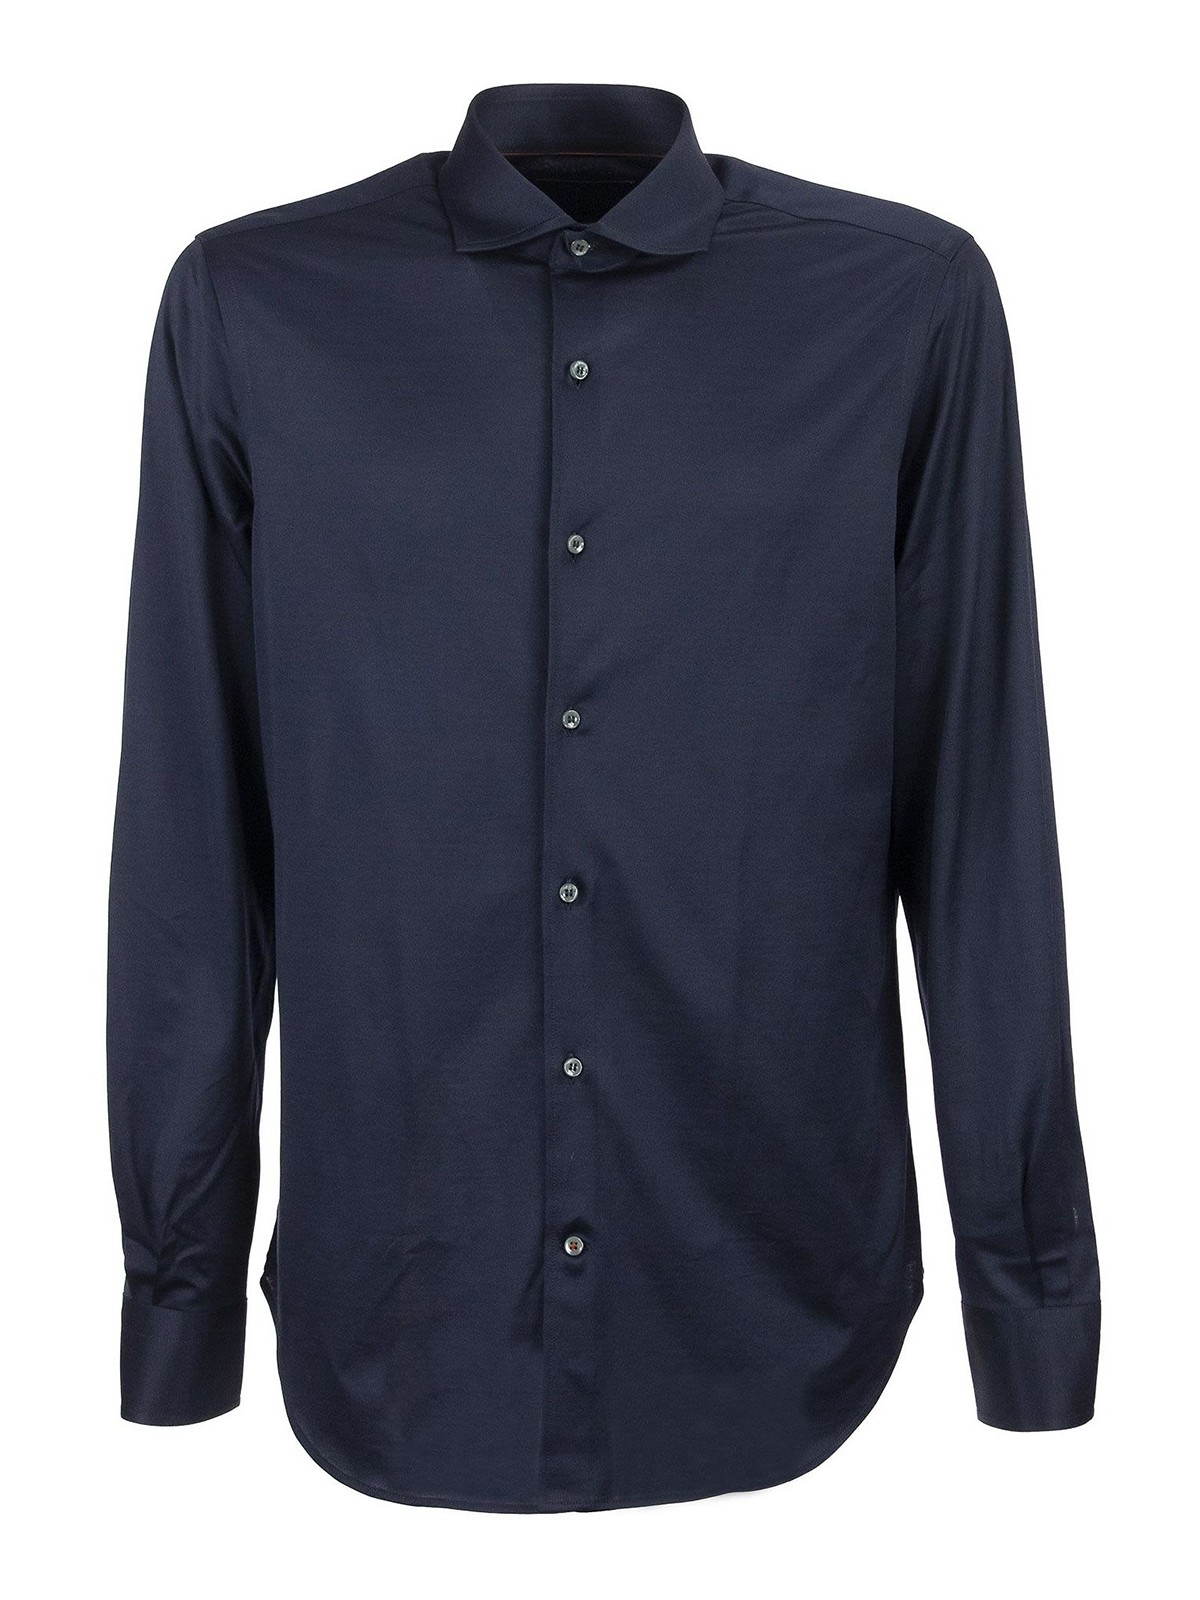 Shirts Loro Piana - Andrew shirt - FAG1735W000 | Shop online at iKRIX